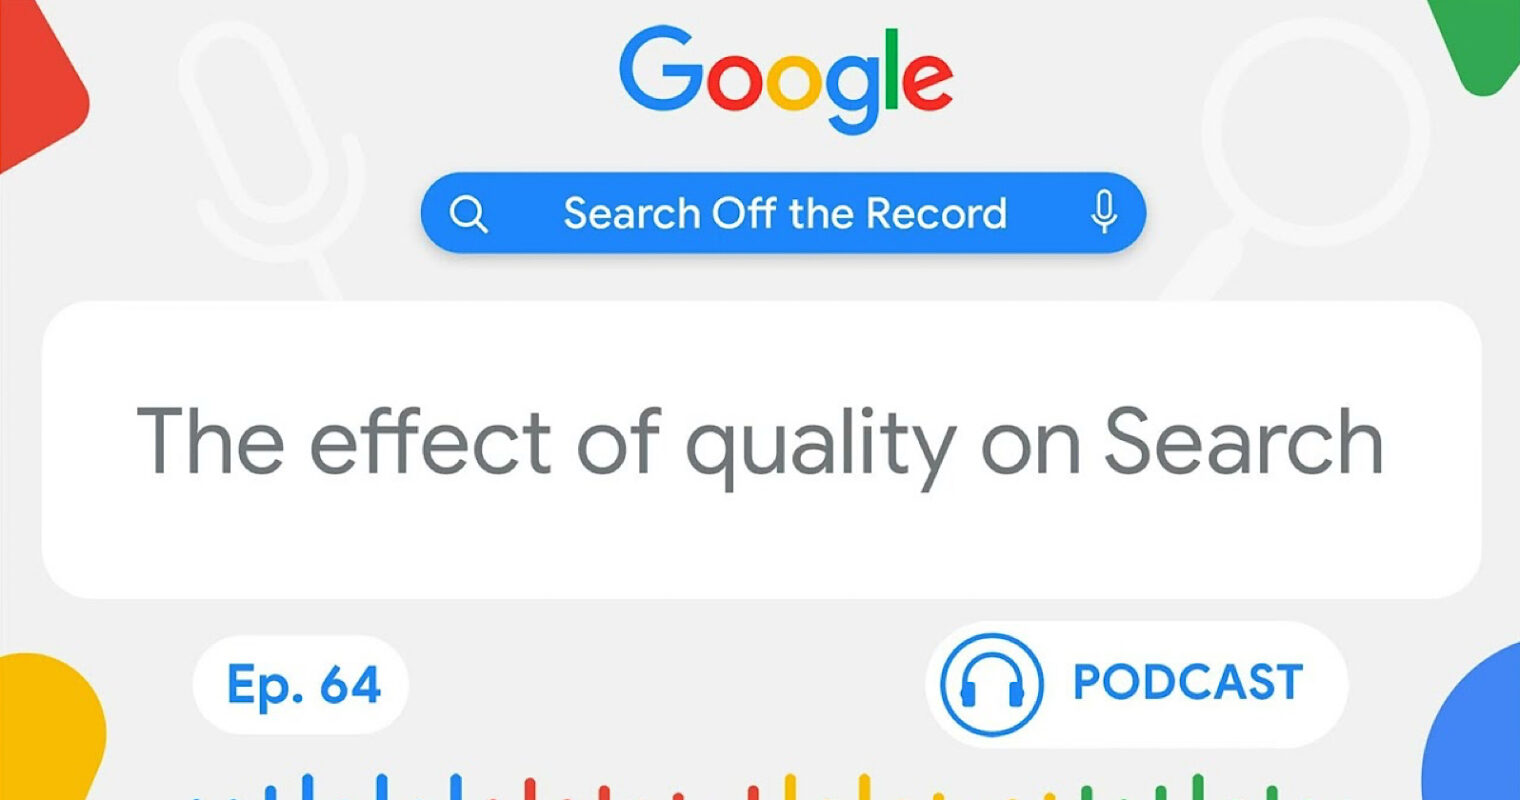 Google lo confirma: la calidad es el factor más importante en la indexación de búsquedas